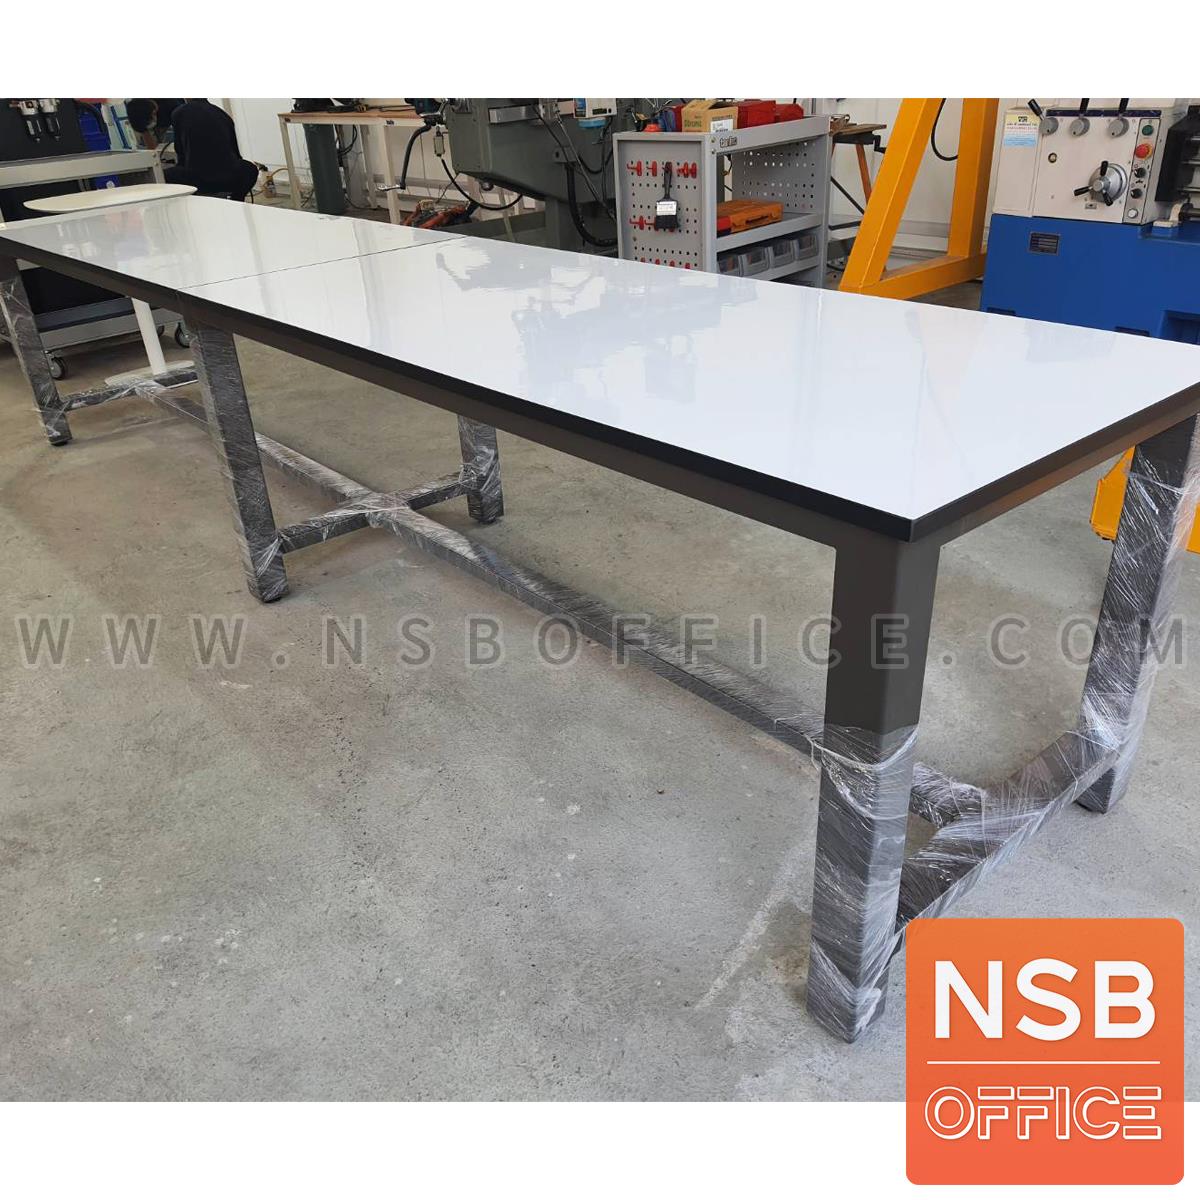 โต๊ะกันสั่น  รุ่น Purecare l (เพียวแคร์ 1) ขนาด 240W, 300W, 360W cm. หน้าท็อป HPL และ คอมแพคลามิเนต  